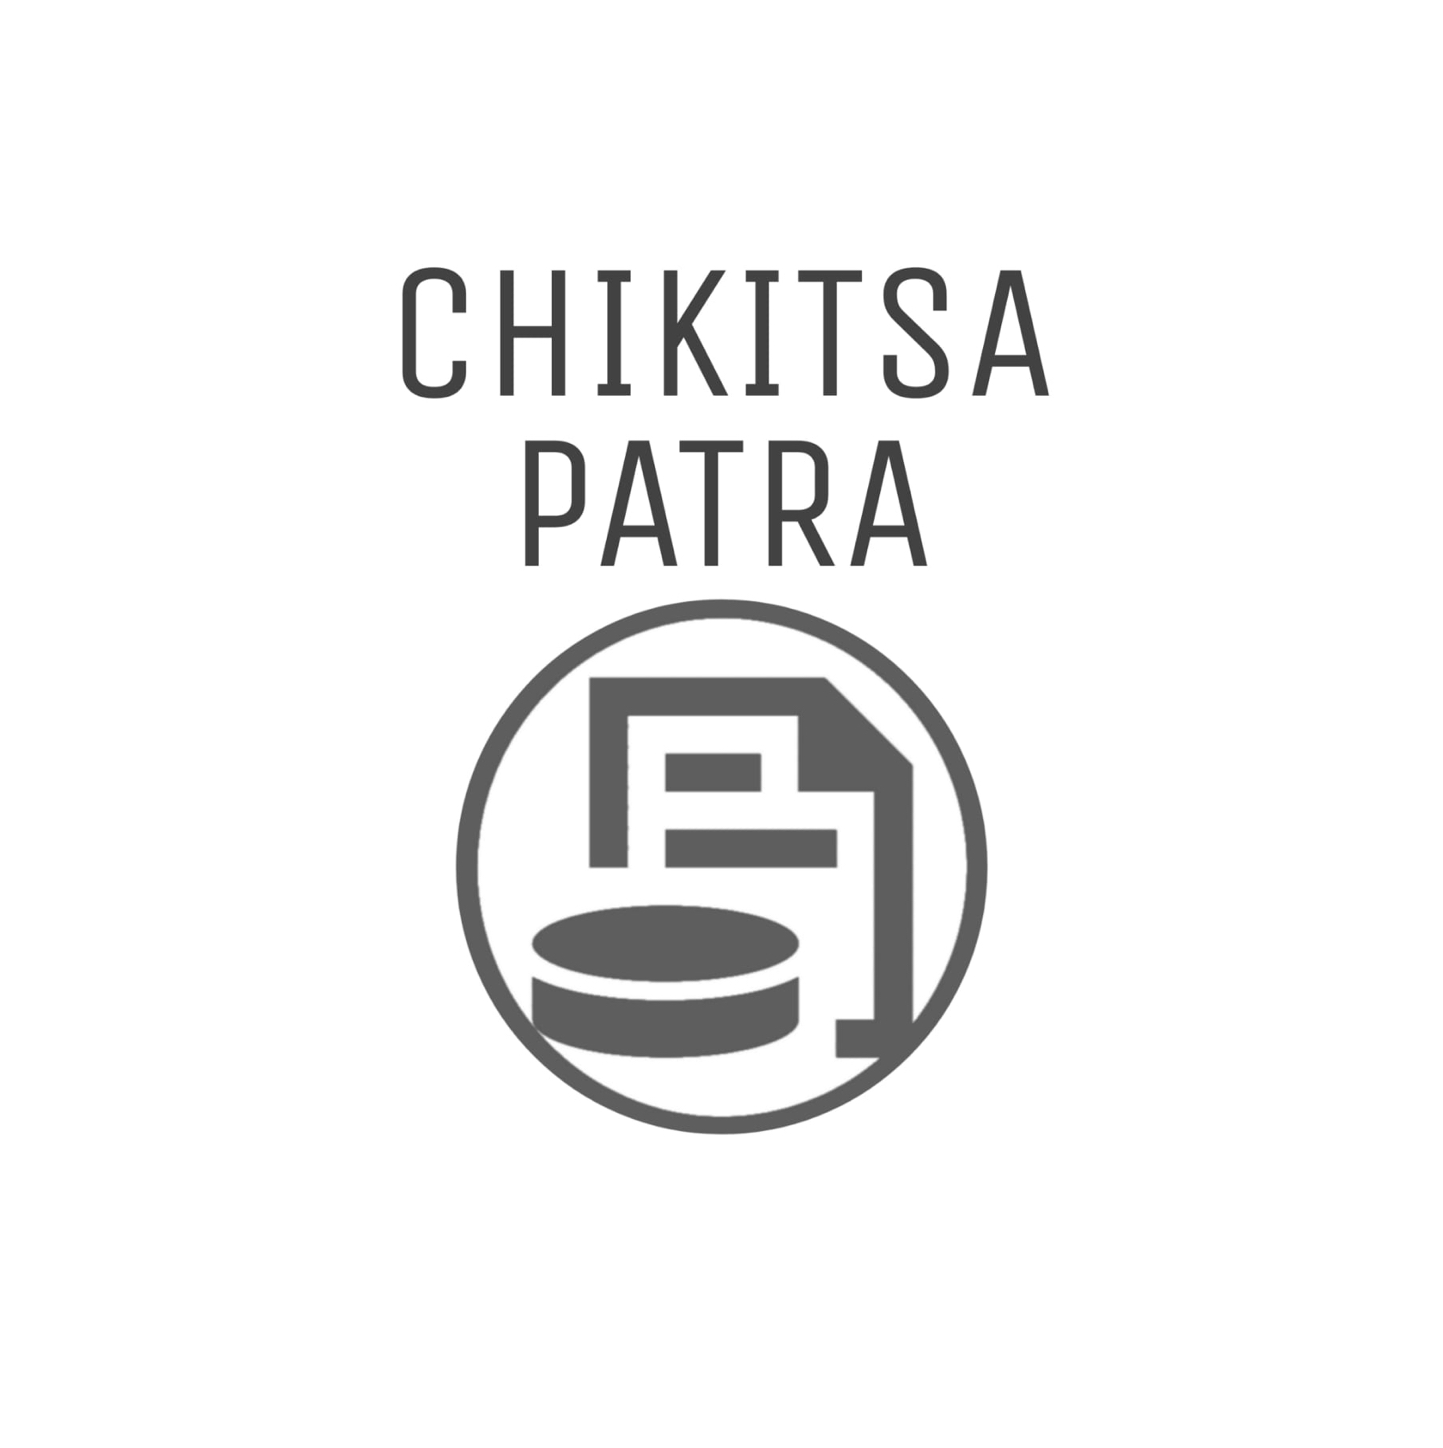 CHIKITSA PATRA